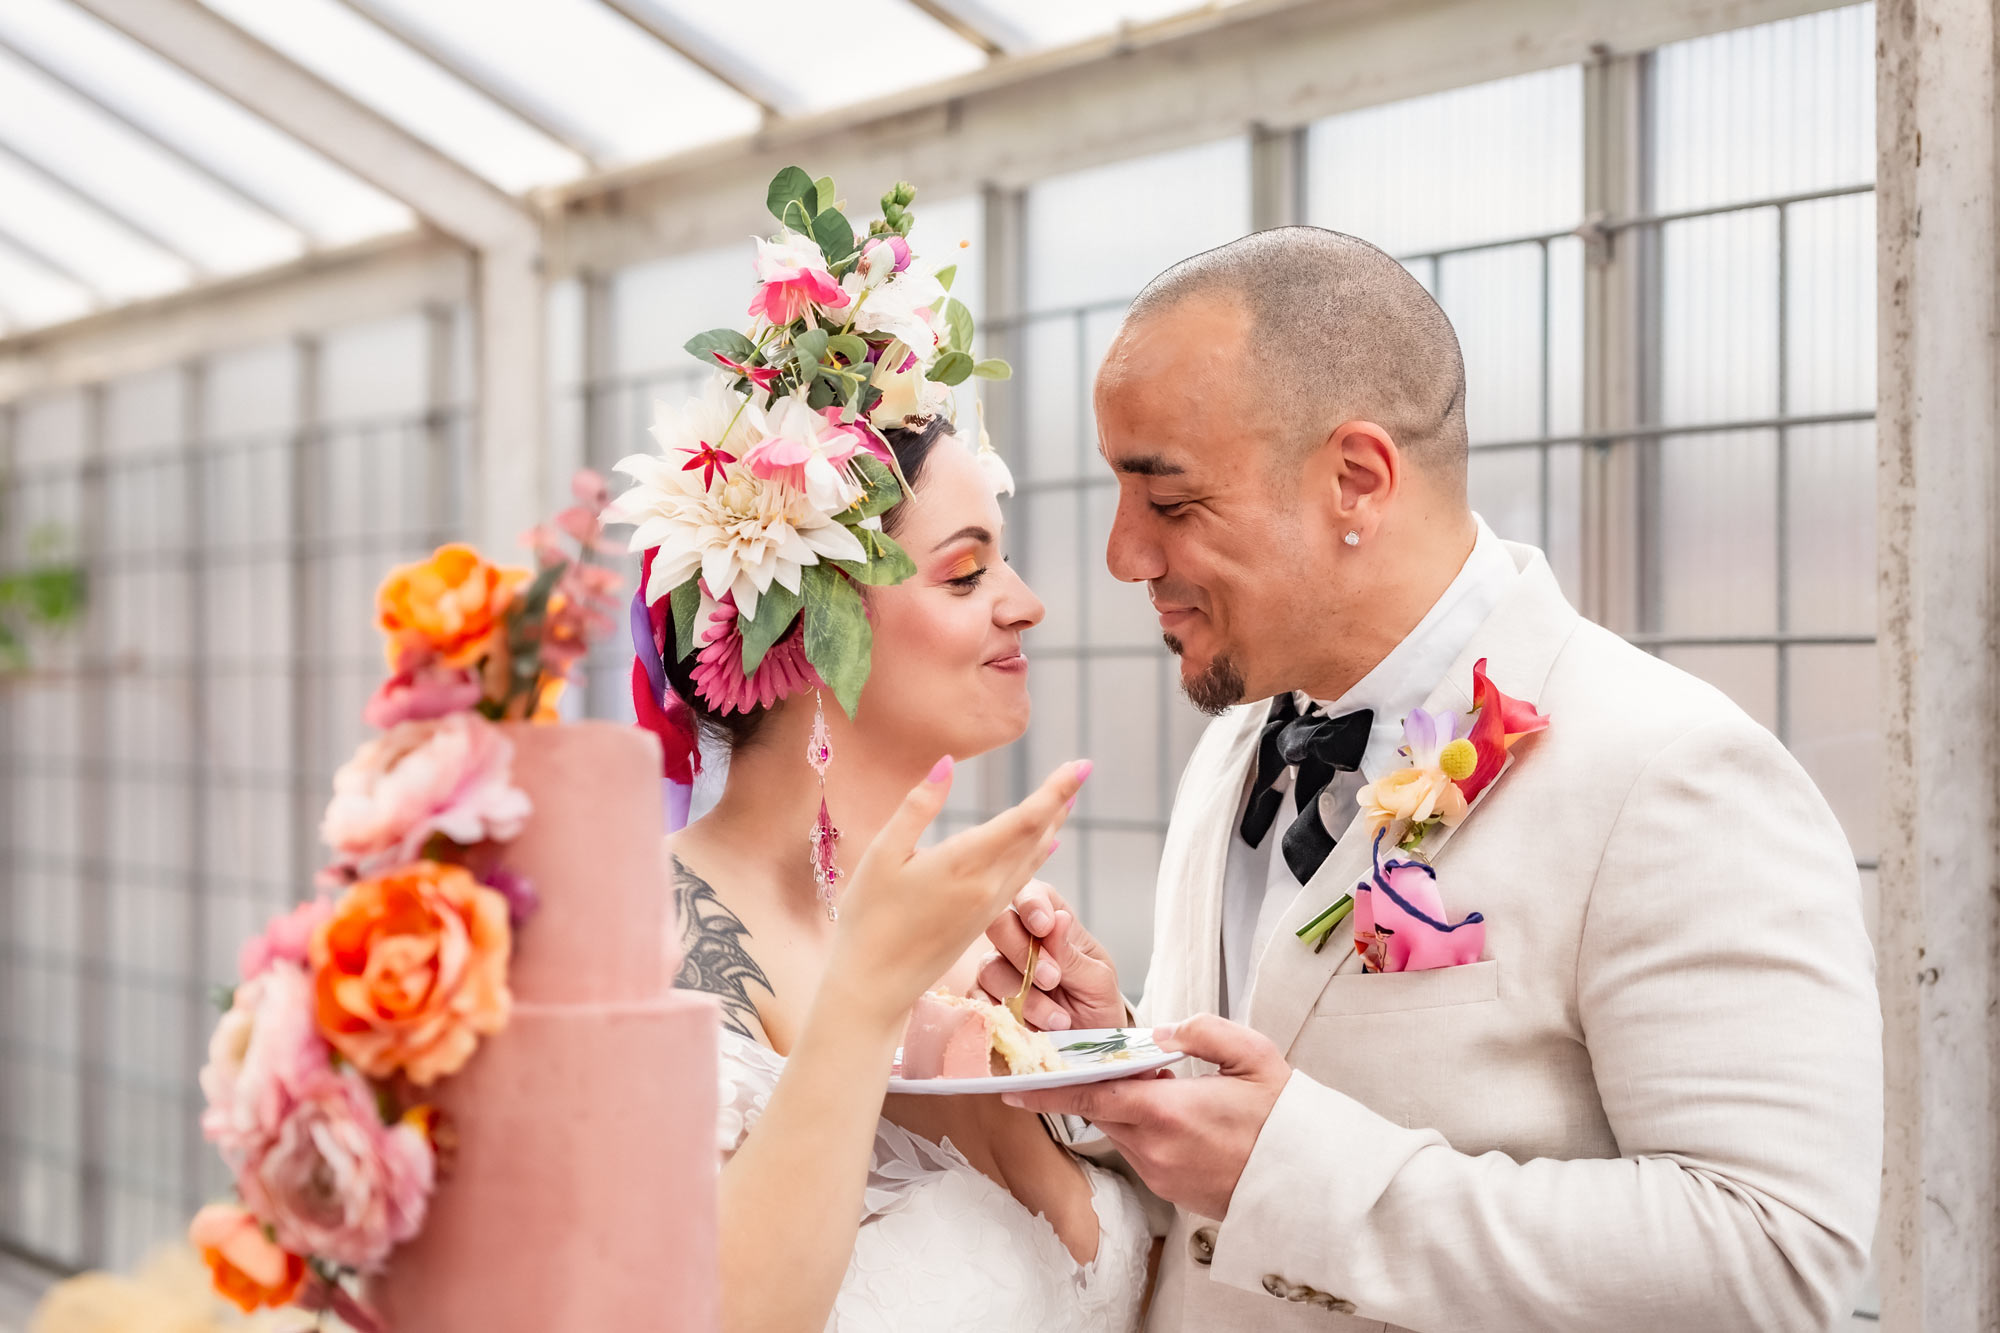 Bruden och brudgummen äter en tårtbit tillsammans. De tittar på varandra och ler. I förgrunden syns bröllopstårtan som är rosa med levande blommor.